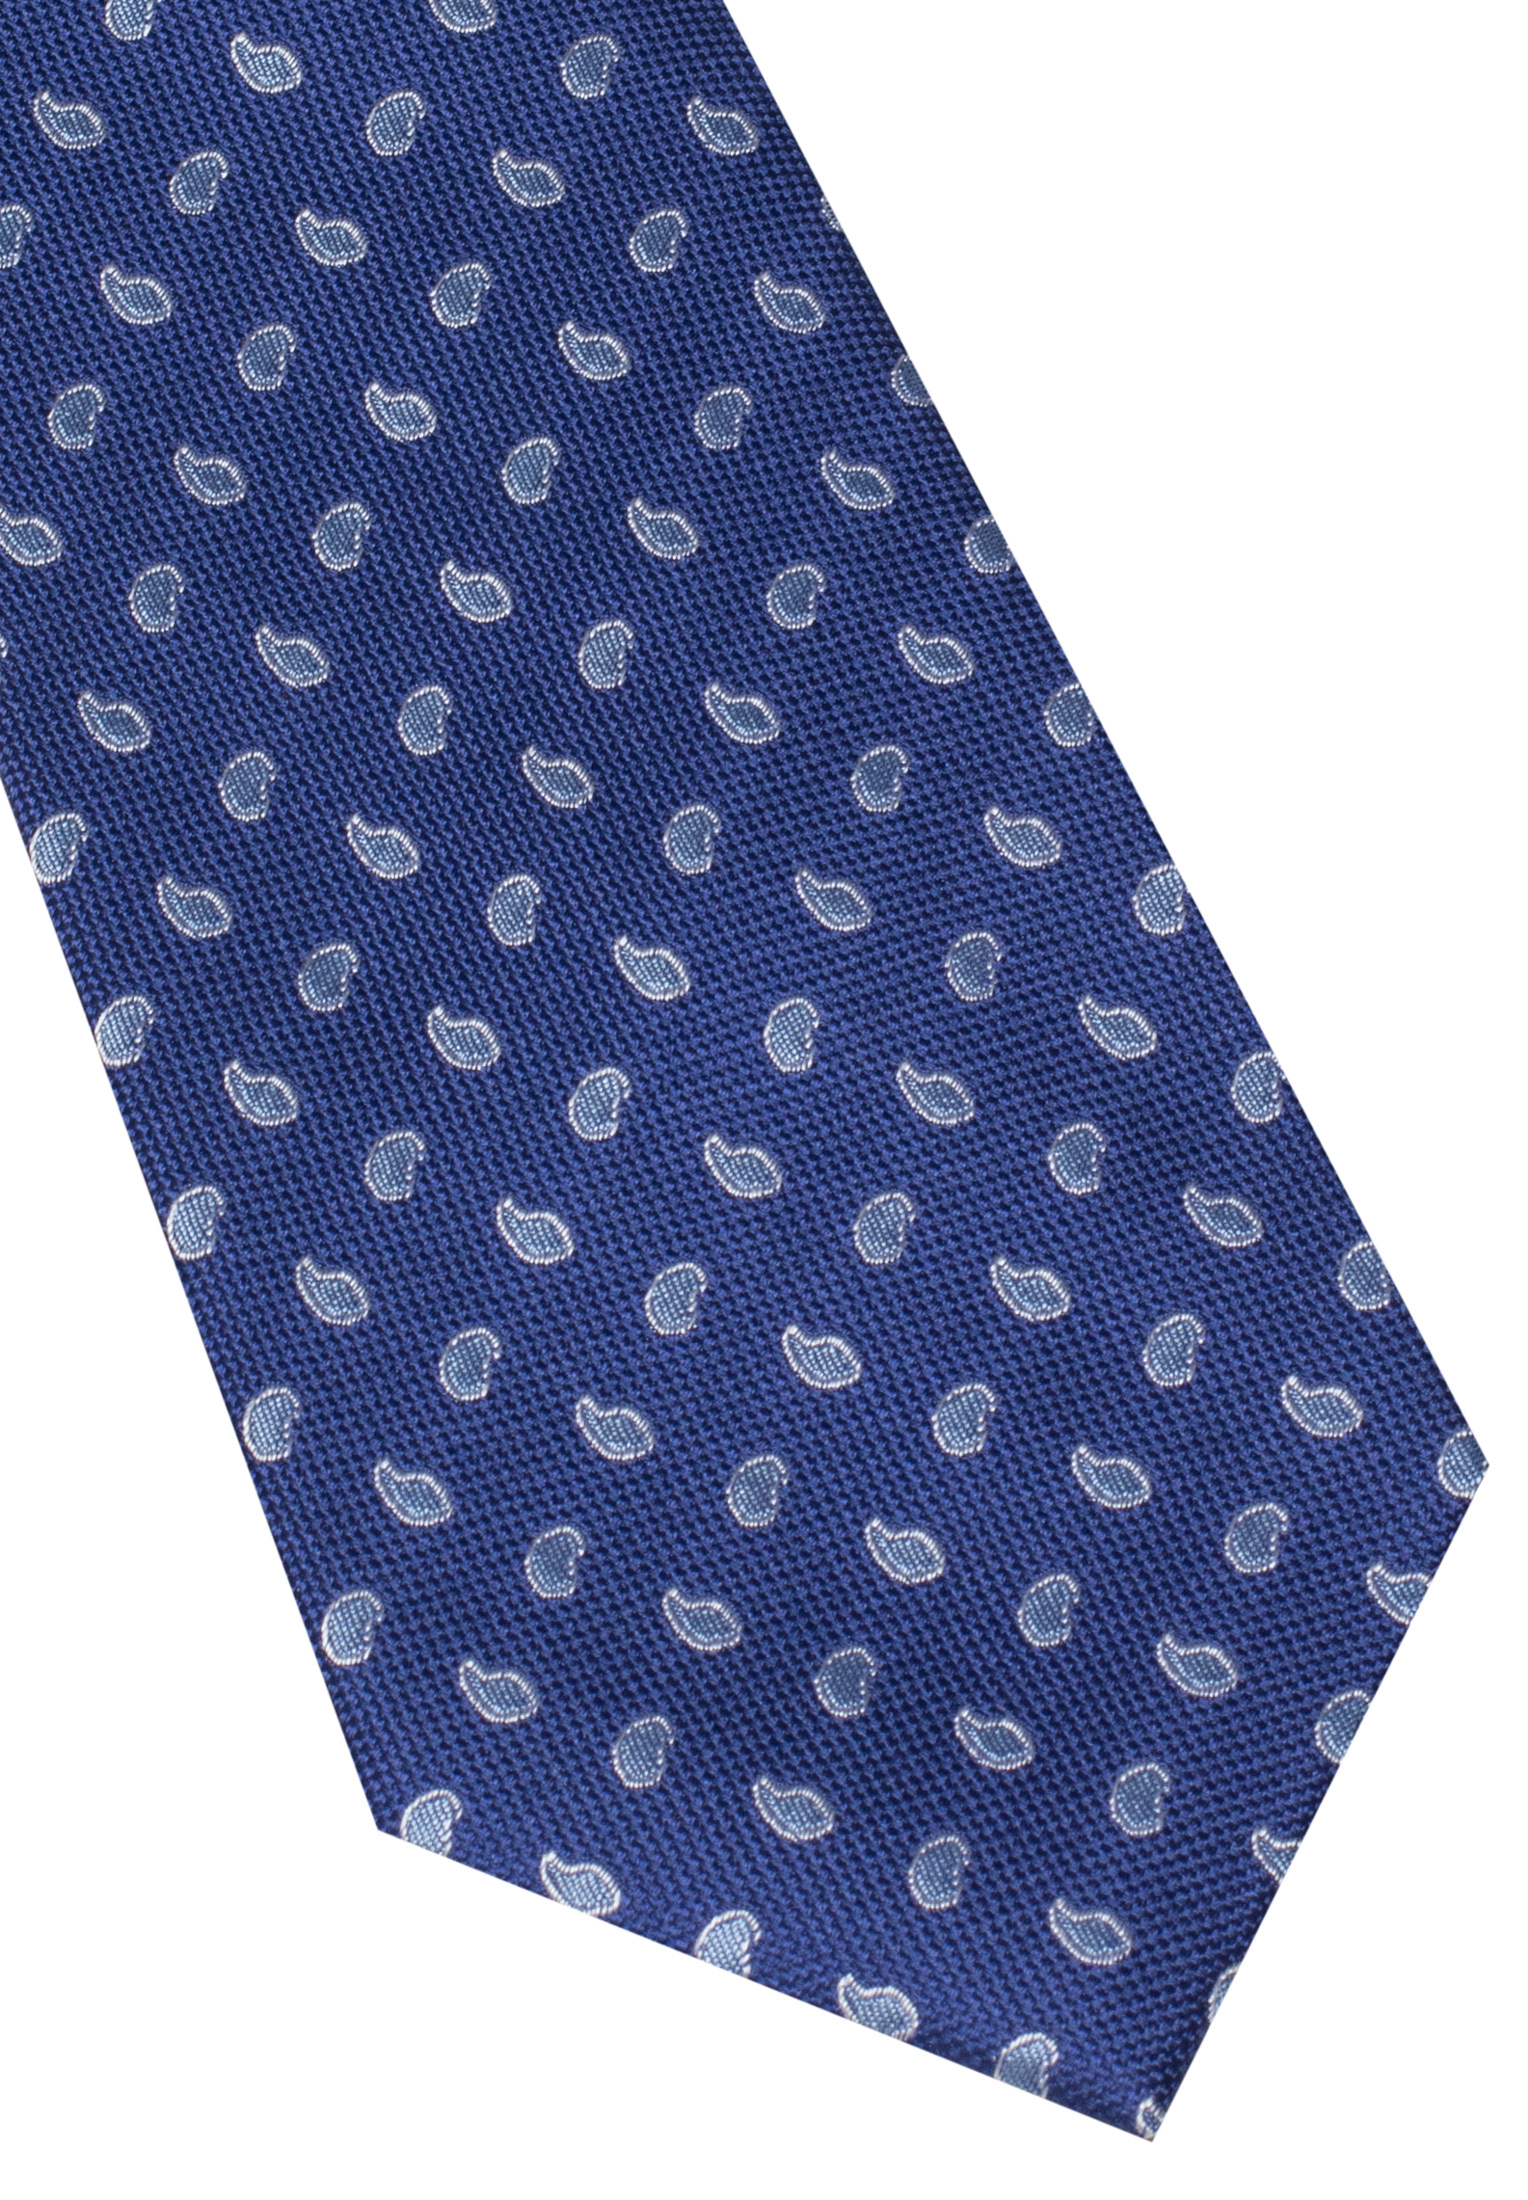 gemustert Krawatte | navy/blau 1AC00541-81-83-142 142 | in navy/blau |